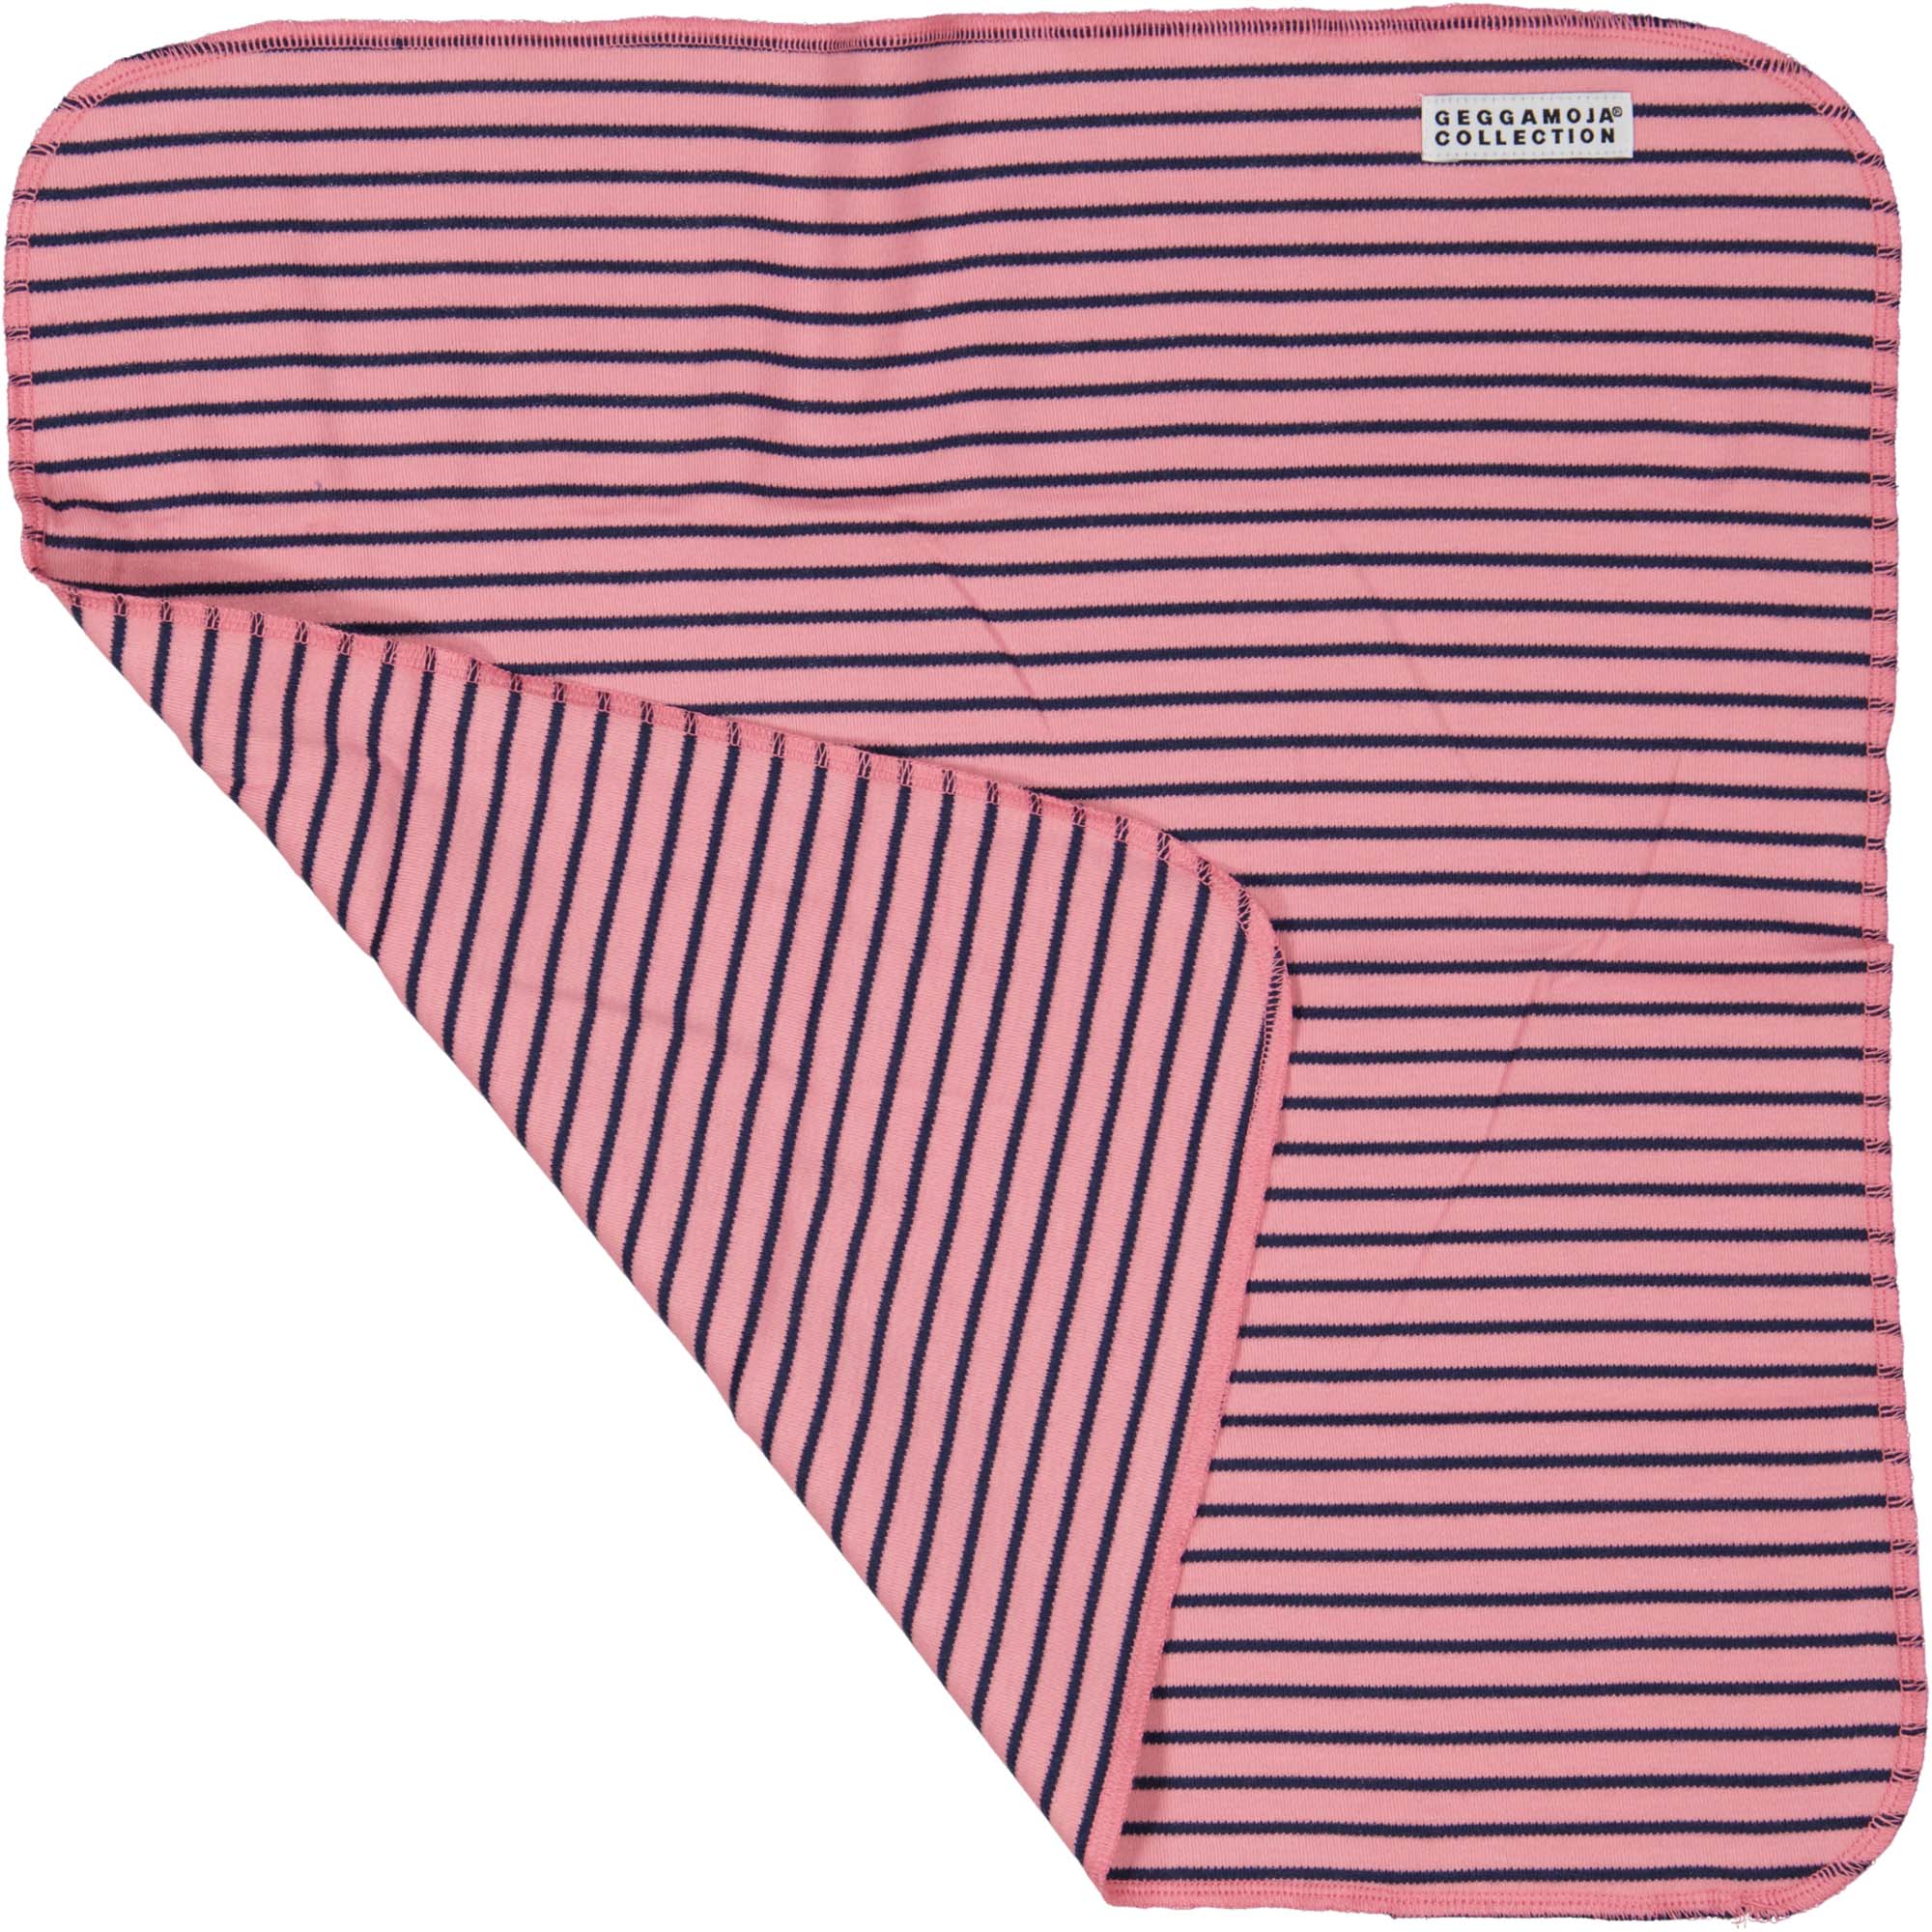 Cuddly blanket Pink/navy